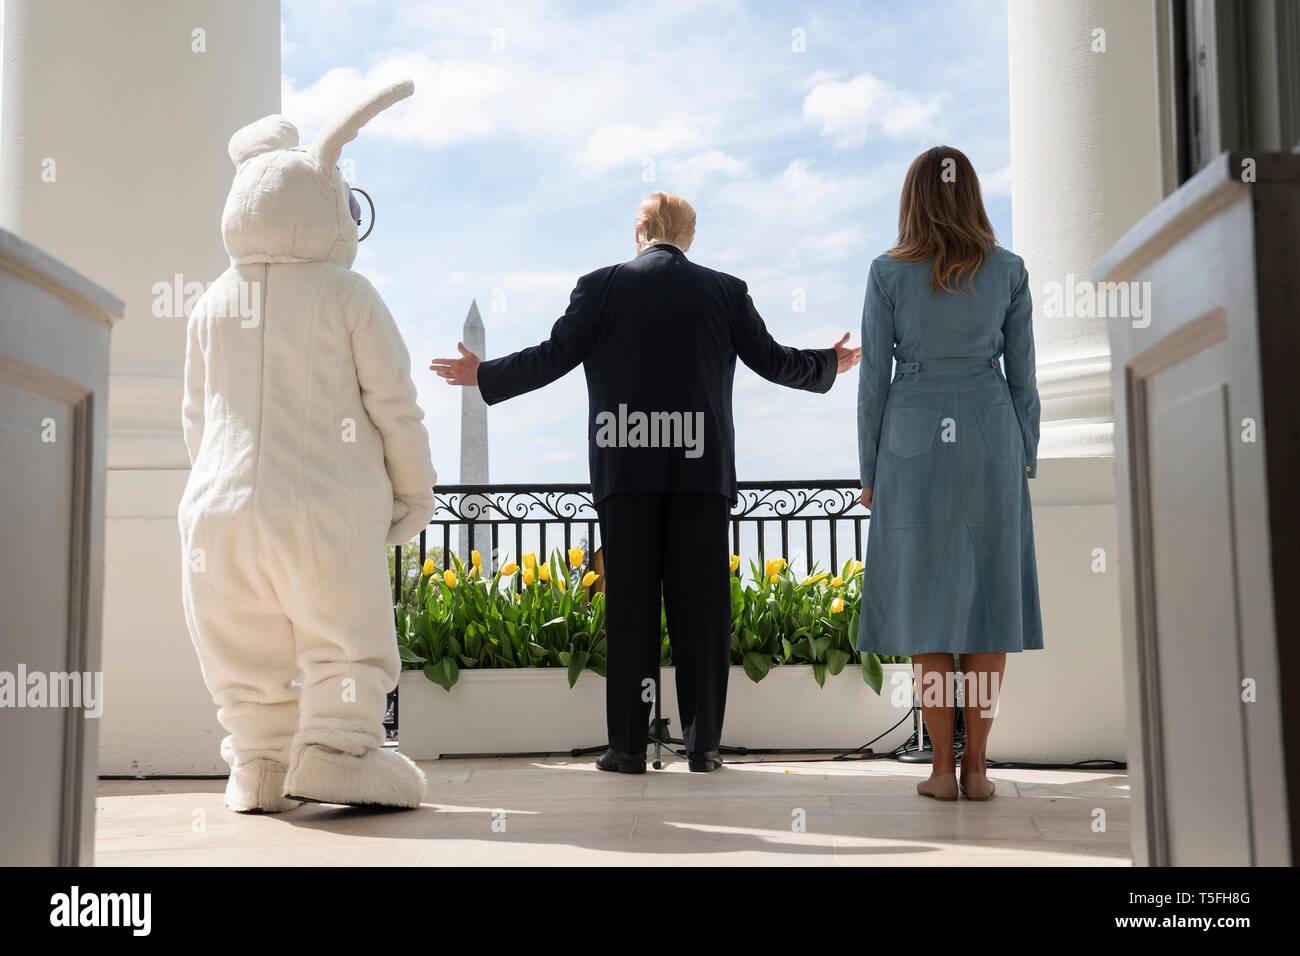 Us-Präsident Donald Trump und First Lady Melania Trump melden Sie dem Osterhasen bei der Bekanntgabe der Anfang des jährlichen Weiße Haus Easter Egg Roll Event aus dem Süden Portico Balkon des Weißen Hauses April 22, 2019 in Washington, DC. Dies ist das 141 Jahr für das Frühjahr stattfindenden Veranstaltung. Stockfoto